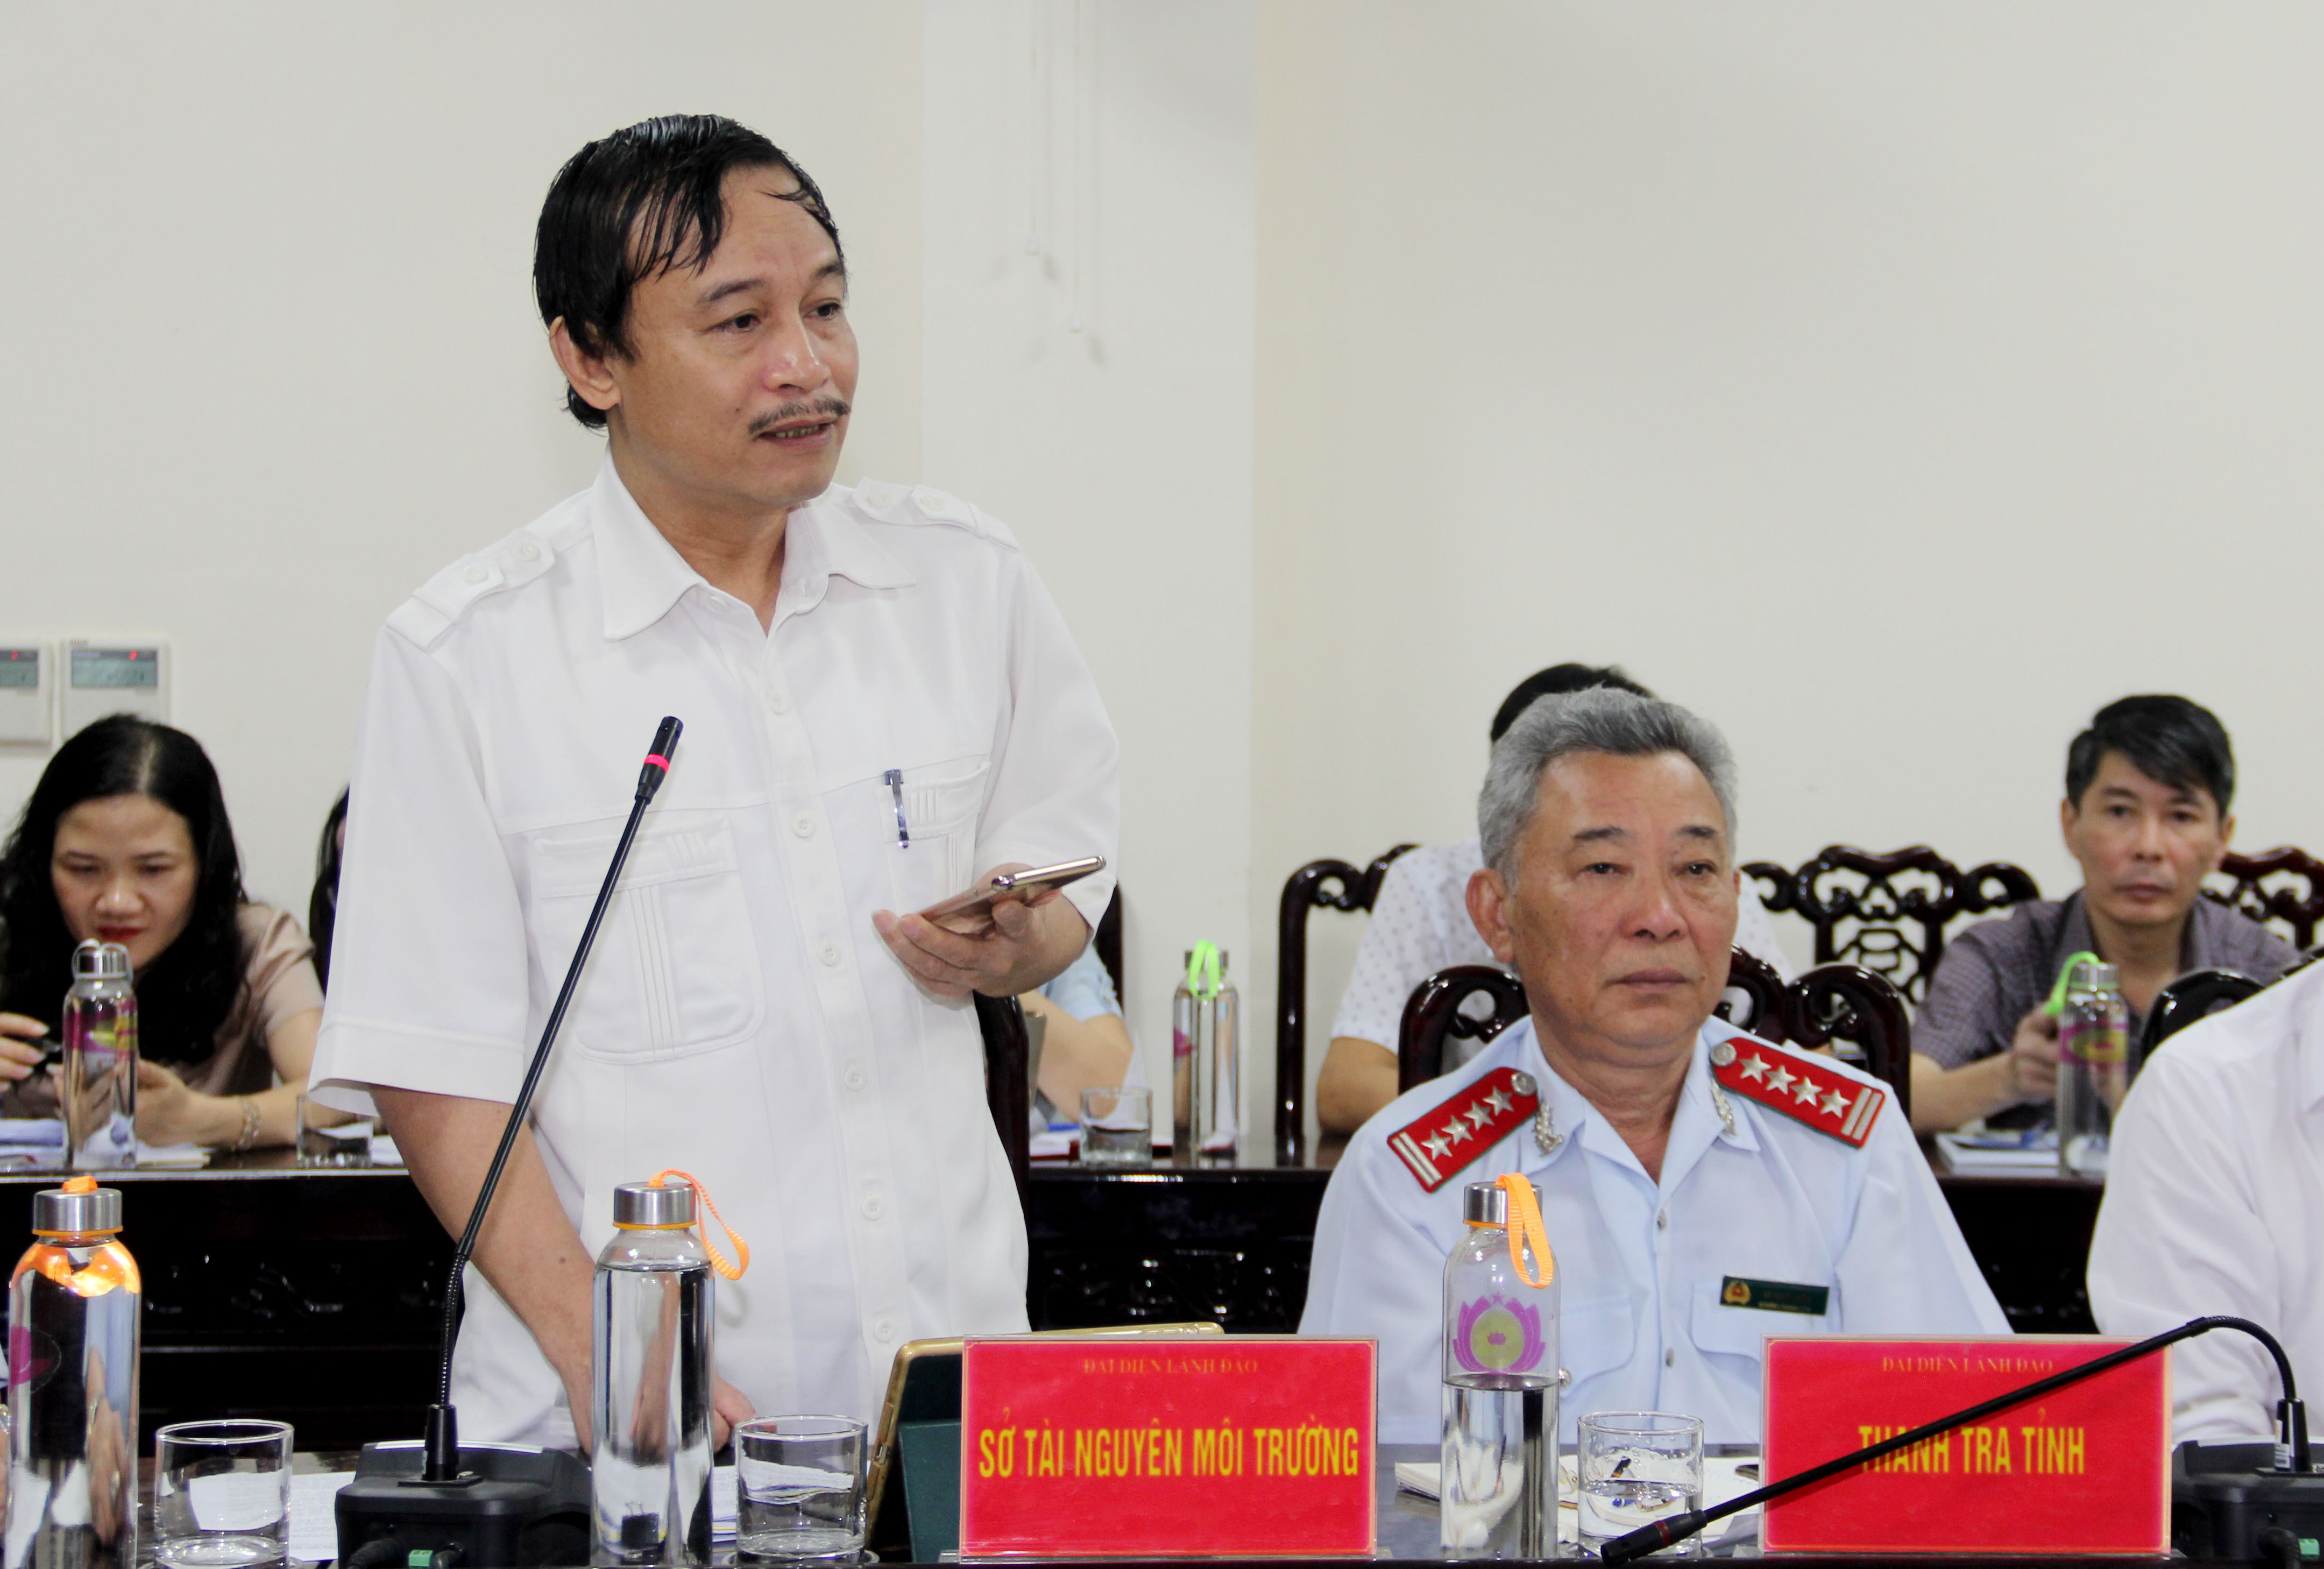 Ông Võ Duy Việt - Giám đốc Sở TN&MT nêu ý kiến về việc giải quyết các kiến nghị của công dân. Ảnh: Phạm Bằng